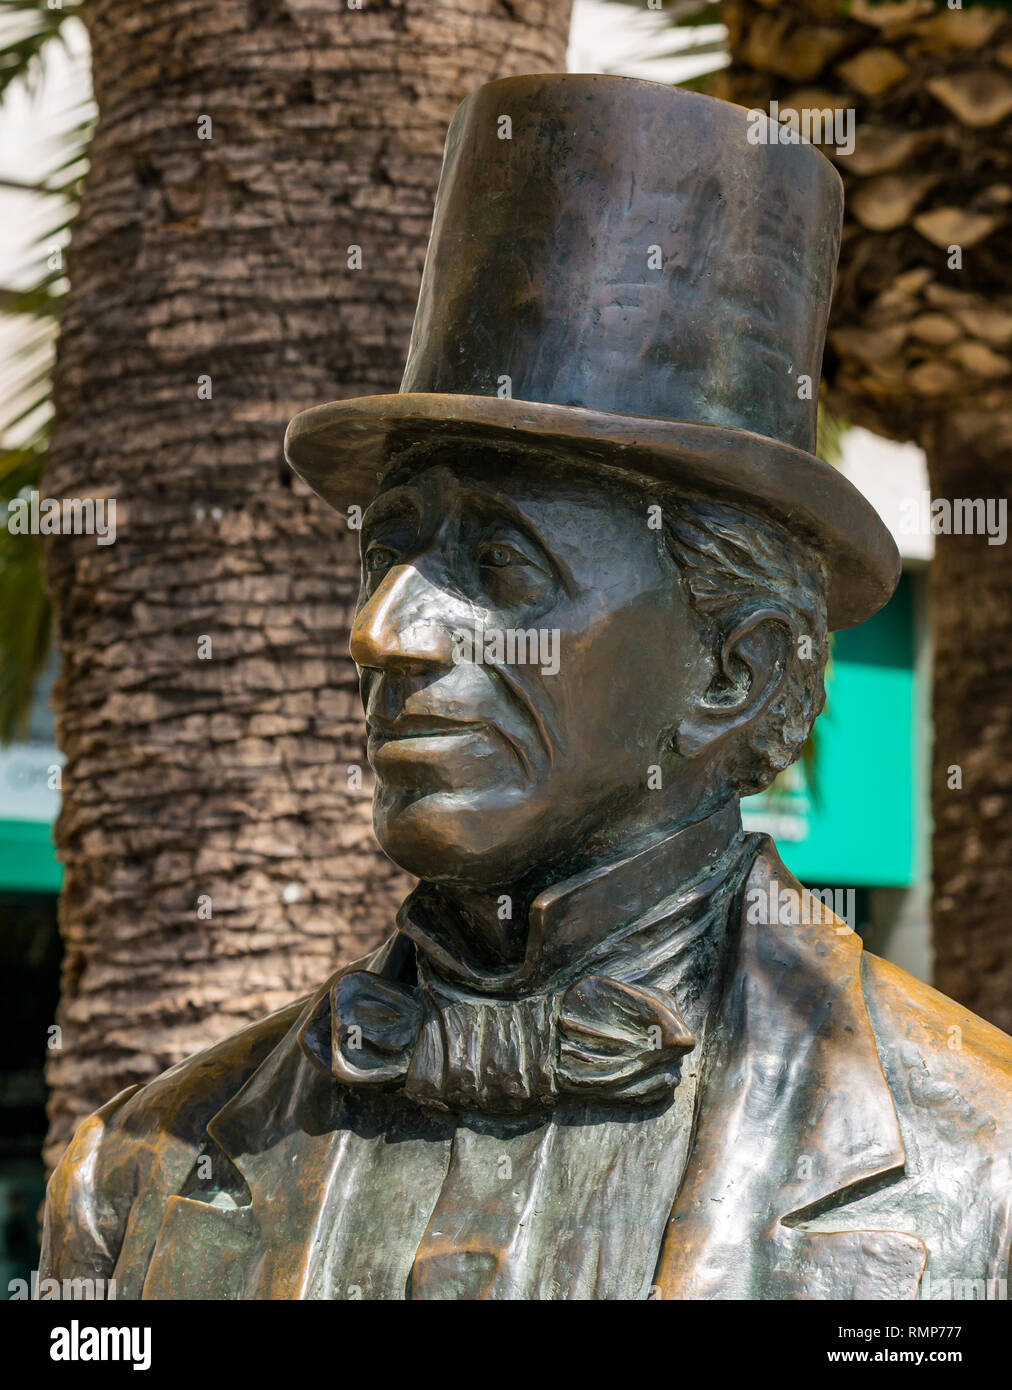 Scultura in bronzo statua di Hans Christian Andersen, autore danese indossare top hat, dello scultore Jose Maria Córdoba, Malaga, Andalusia, Spagna Foto Stock